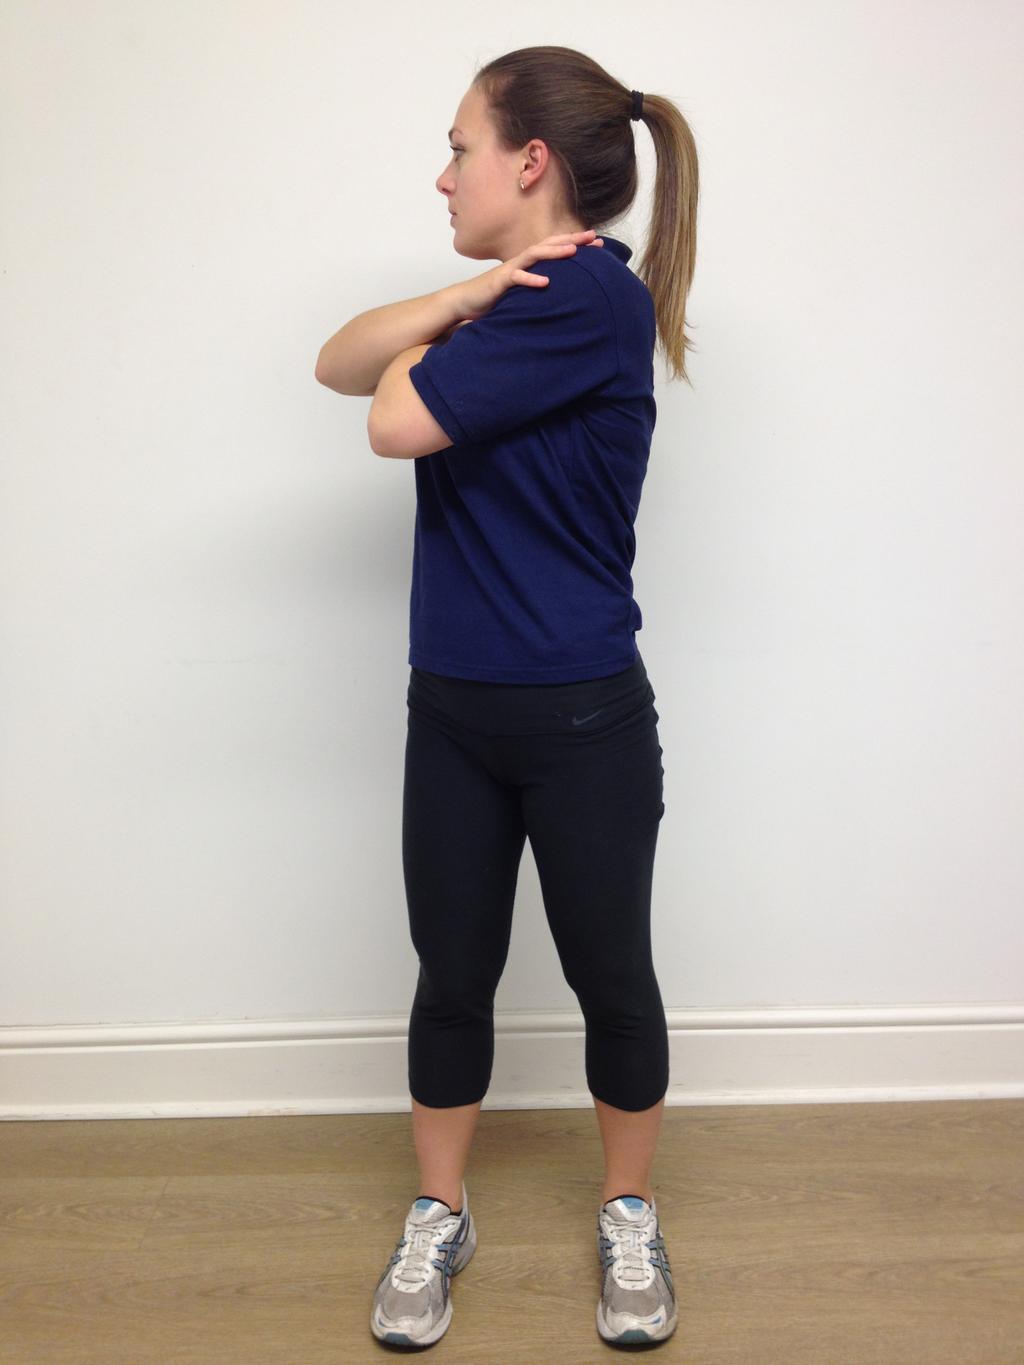 Skyd ryg: Sid eller stå med let spredte ben, kryds armene og tag fat i knæhaserne, rund ryggen op mod loftet.